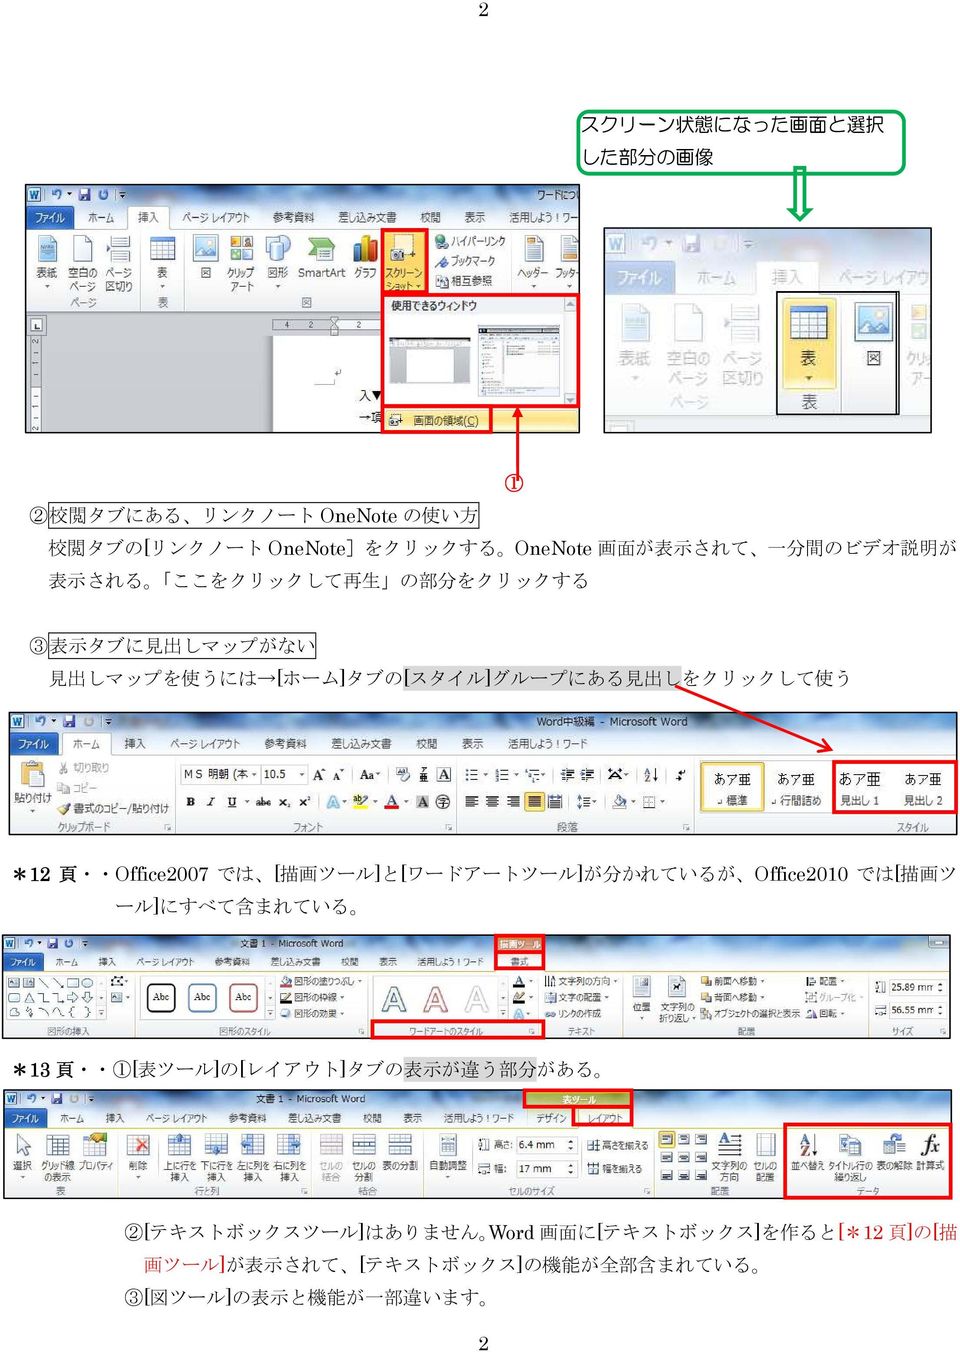 Office2007 では [ 描 画 ツール]と[ワードアートツール]が 分 かれているが Office2010 では[ 描 画 ツ ール]にすべて 含 まれている *13 頁 1[ 表 ツール]の[レイアウト]タブの 表 示 が 違 う 部 分 がある